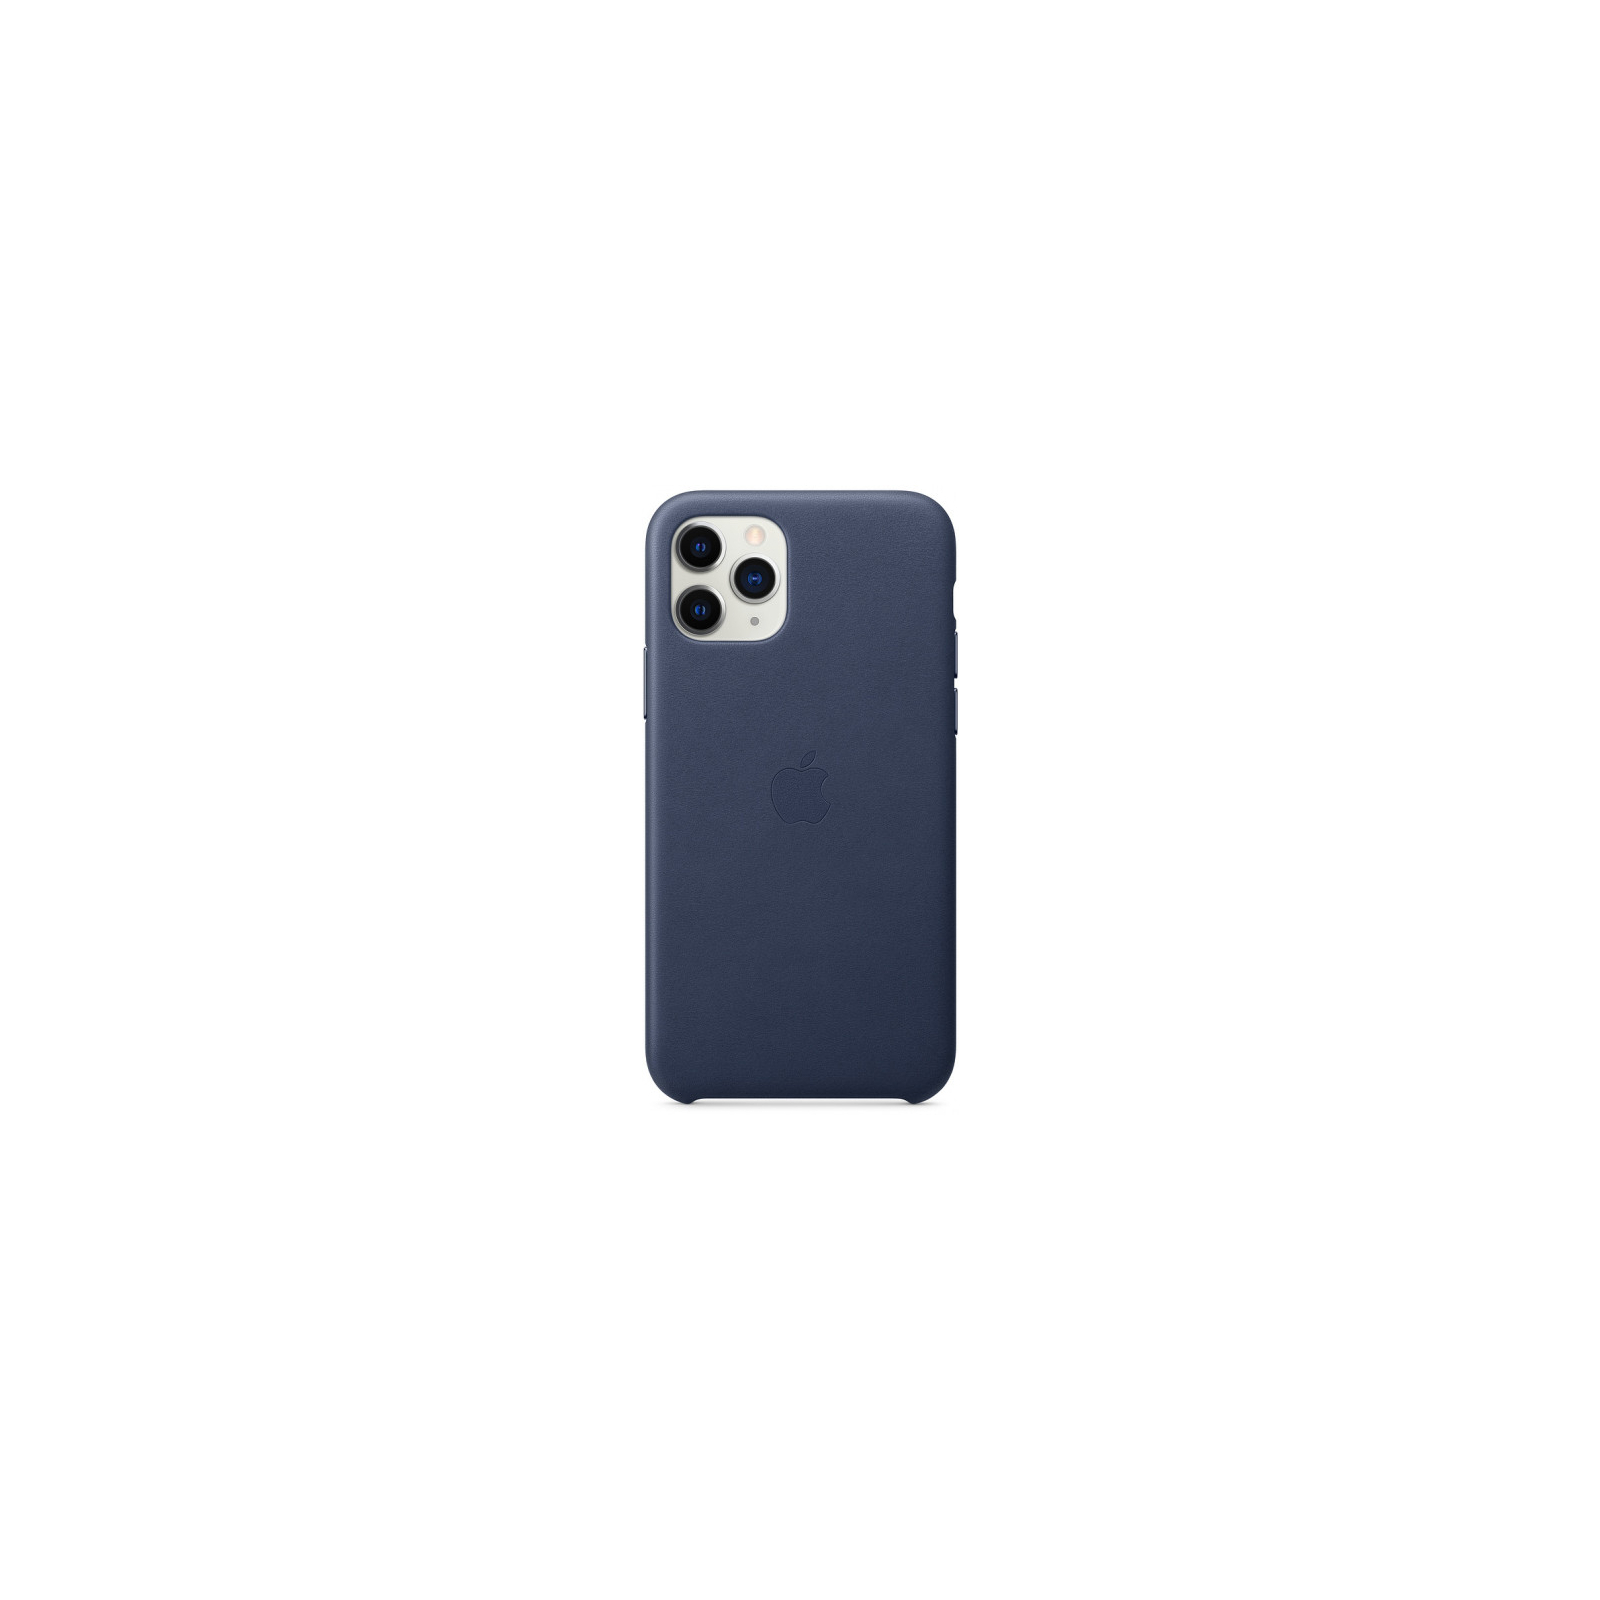 Чехол для мобильного телефона Apple iPhone 11 Pro Leather Case - Midnight Blue (MWYG2ZM/A) изображение 2